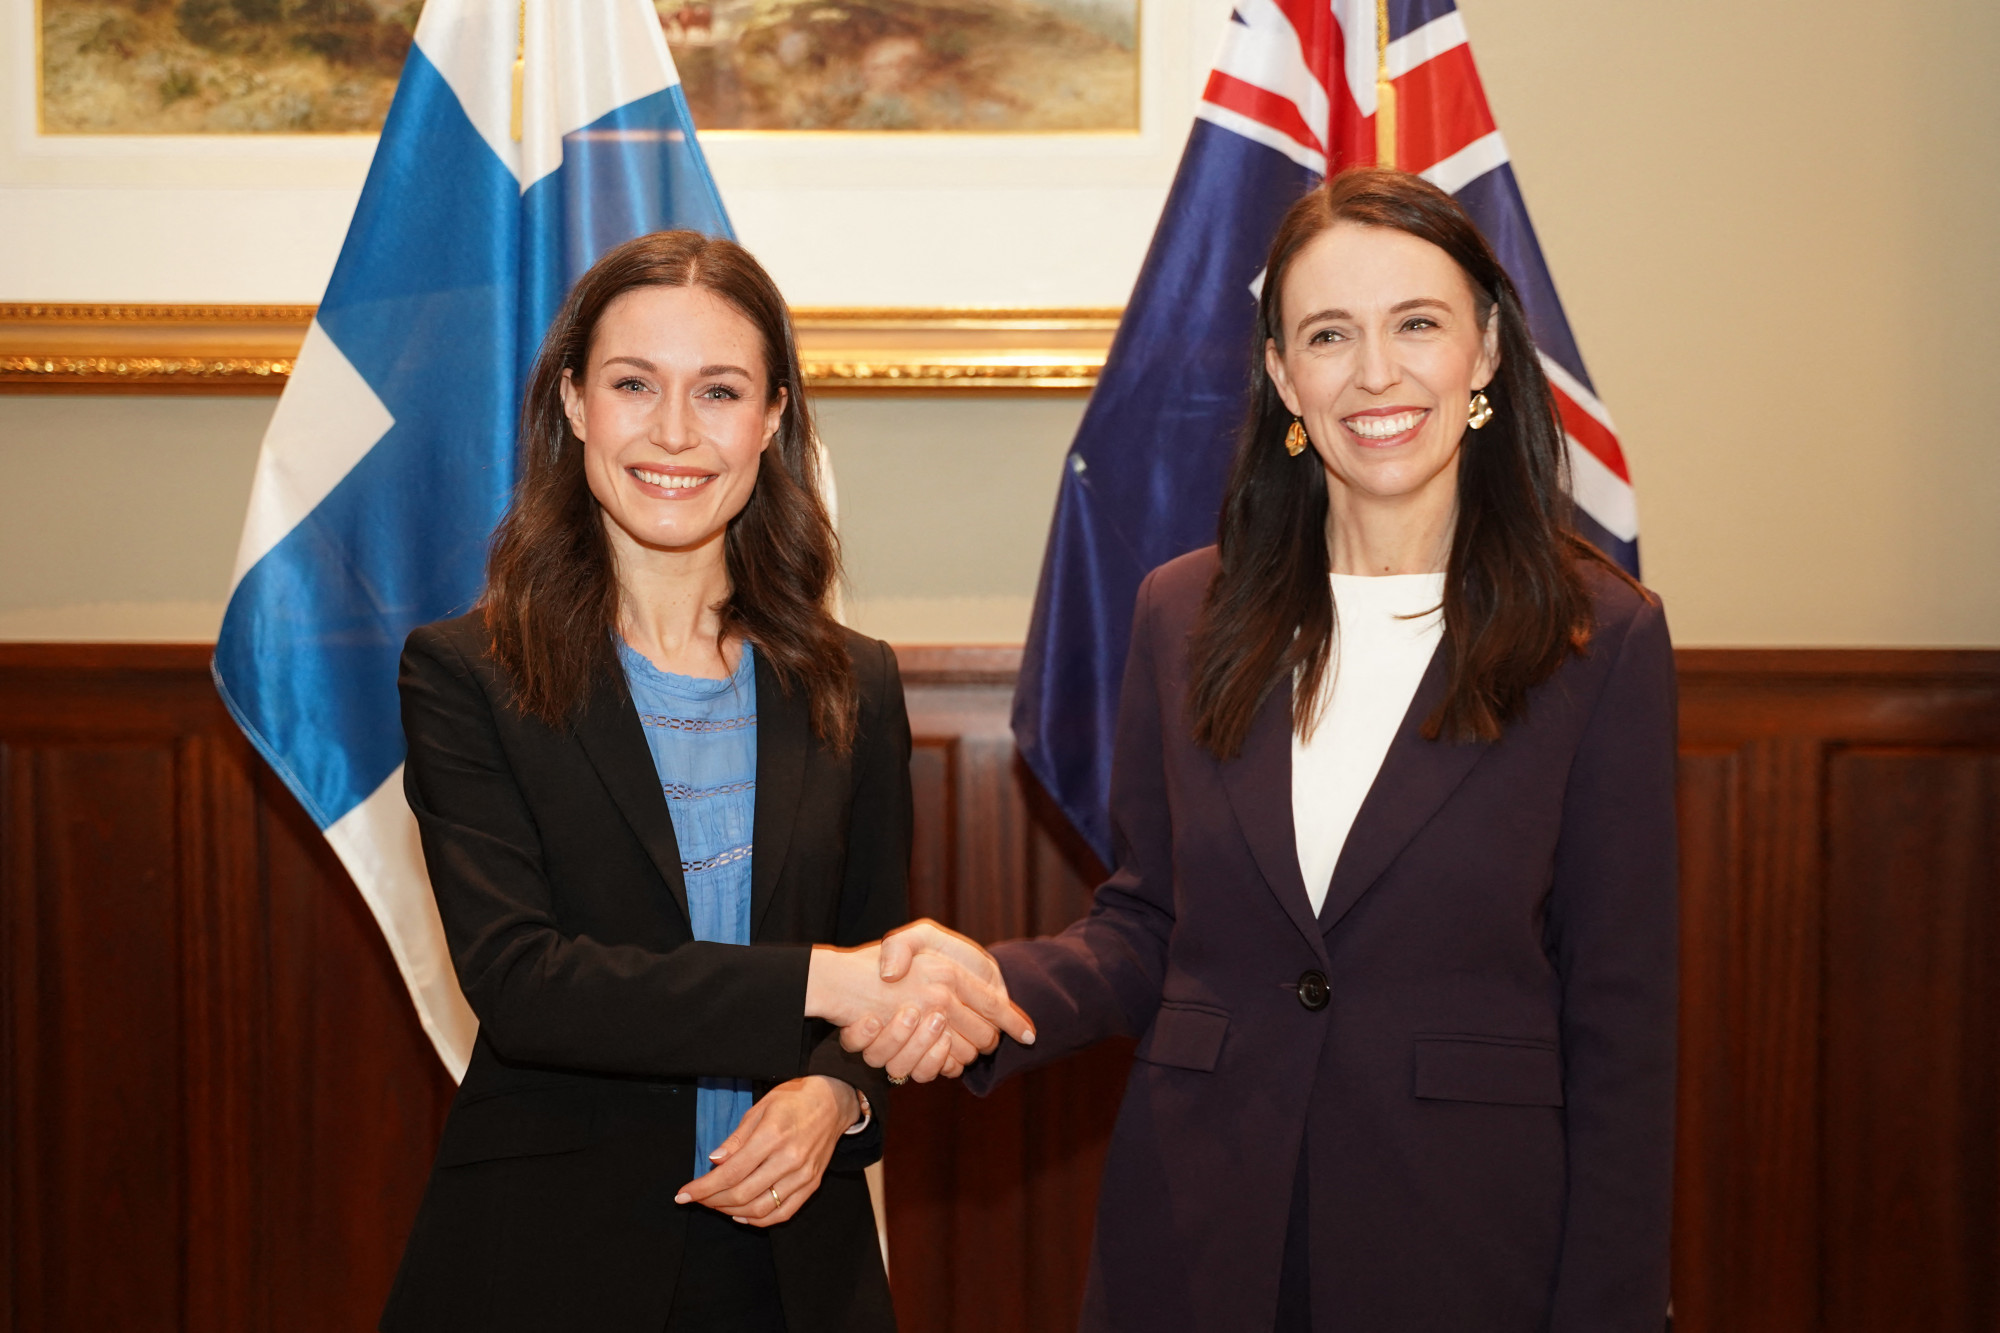 Megkérdezték Új-Zéland és Finnország miniszterelnökét, hogy azért találkoztak-e egymással, mert mindketten fiatal nők